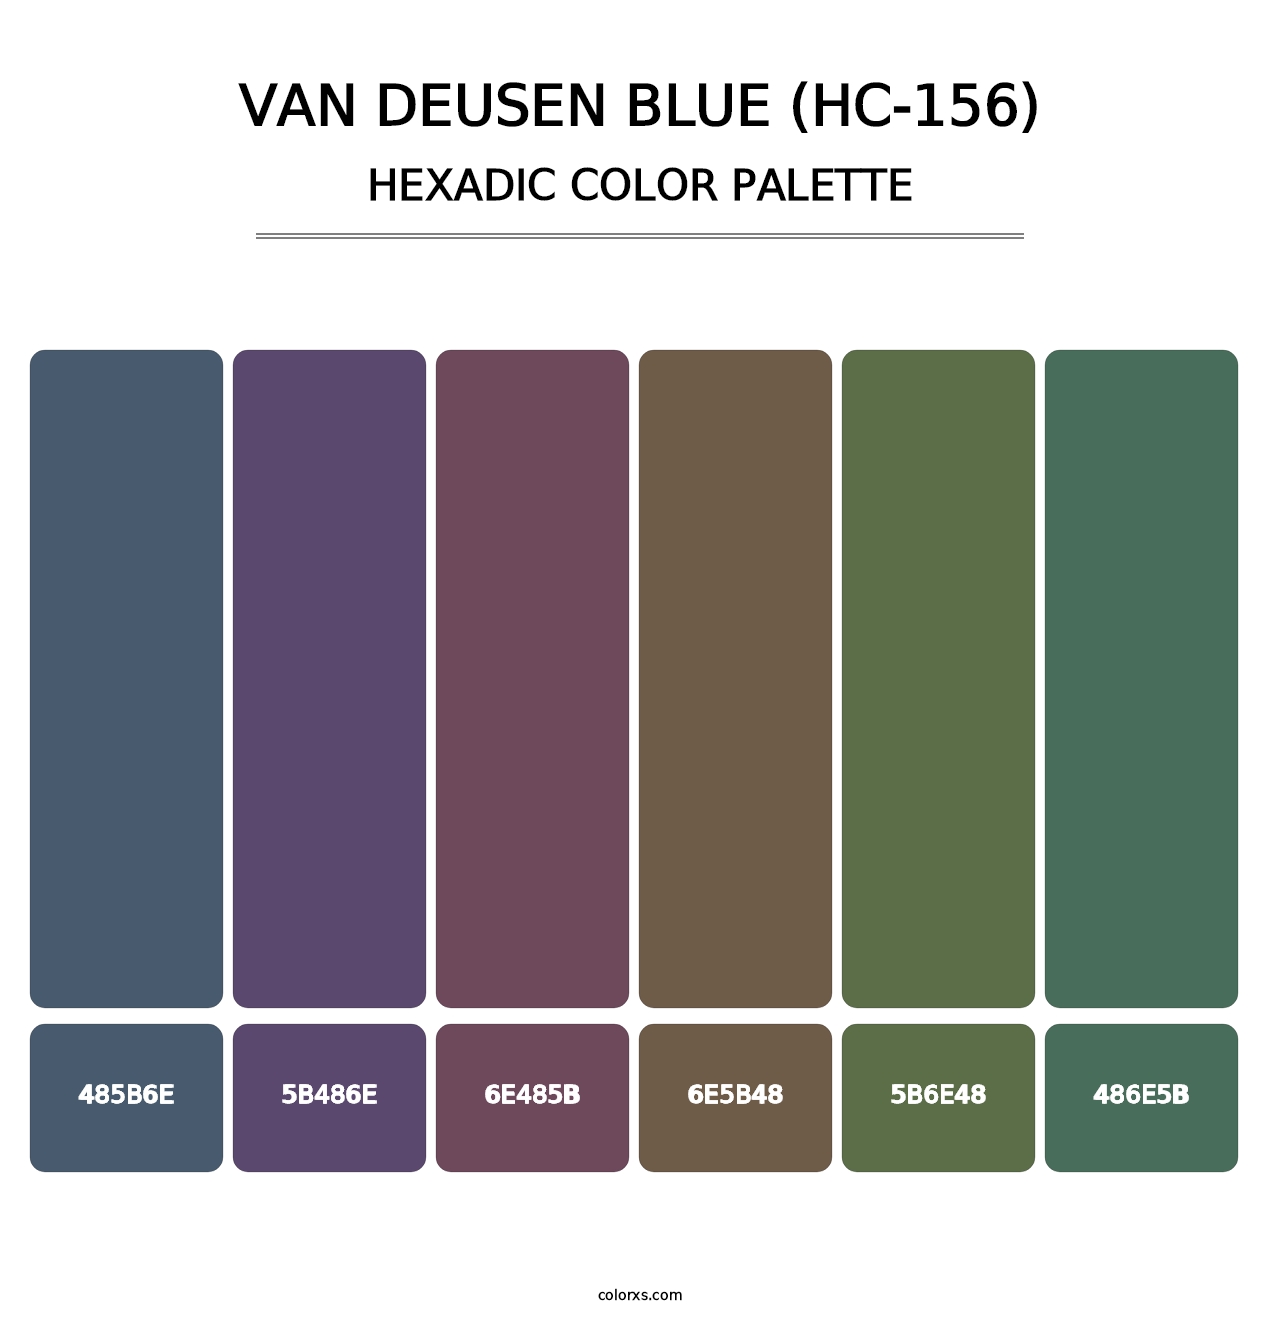 Van Deusen Blue (HC-156) - Hexadic Color Palette